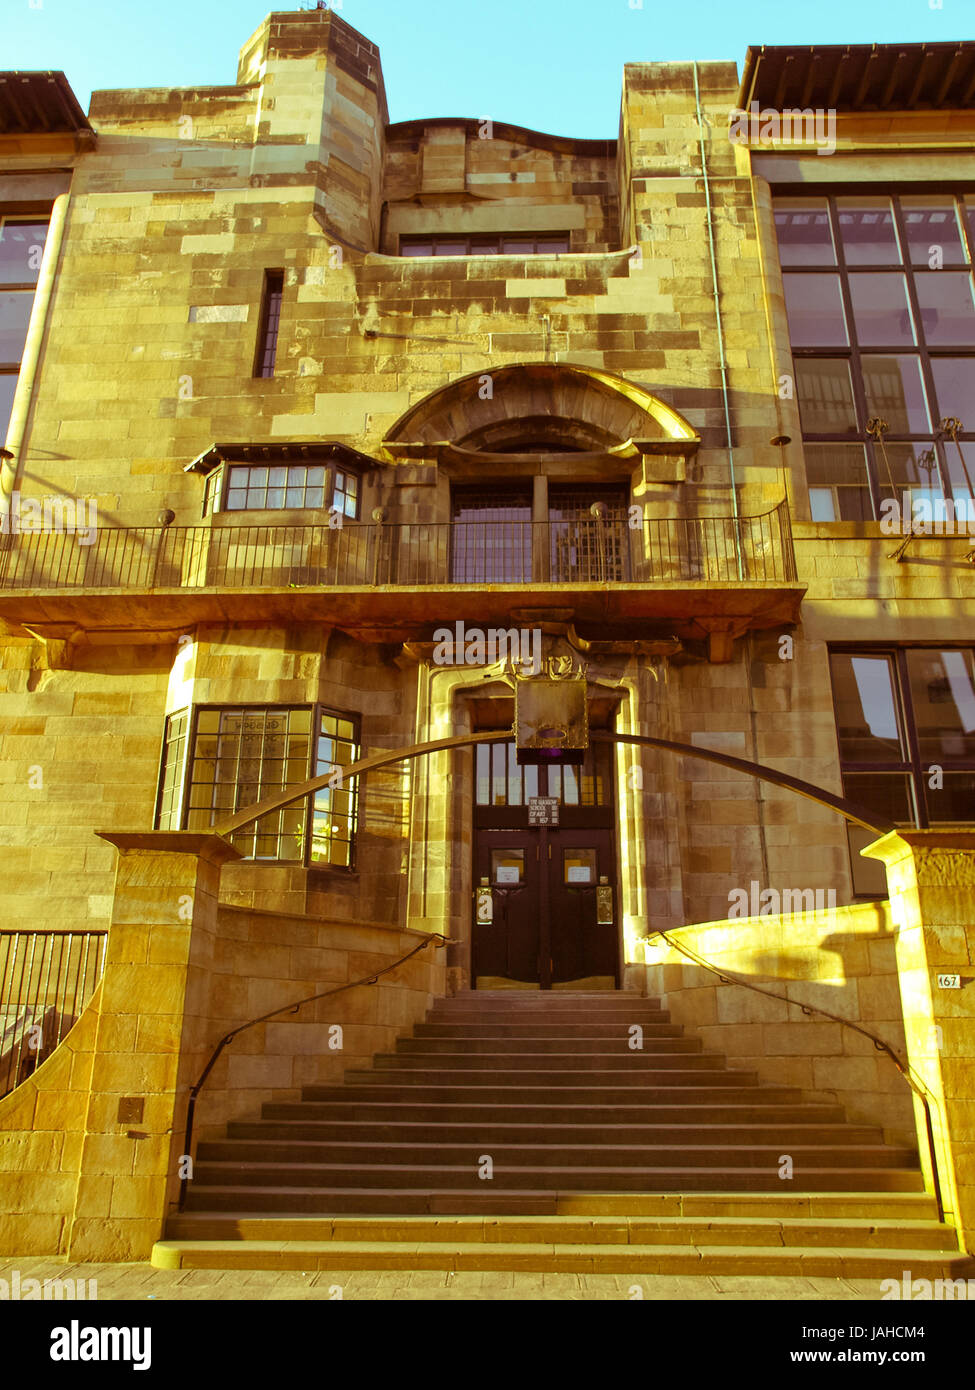 Vintage à la Glasgow School of Art conçu en 1896 par l'architecte écossais Charles Rennie Mackintosh, Glasgow, Ecosse Banque D'Images